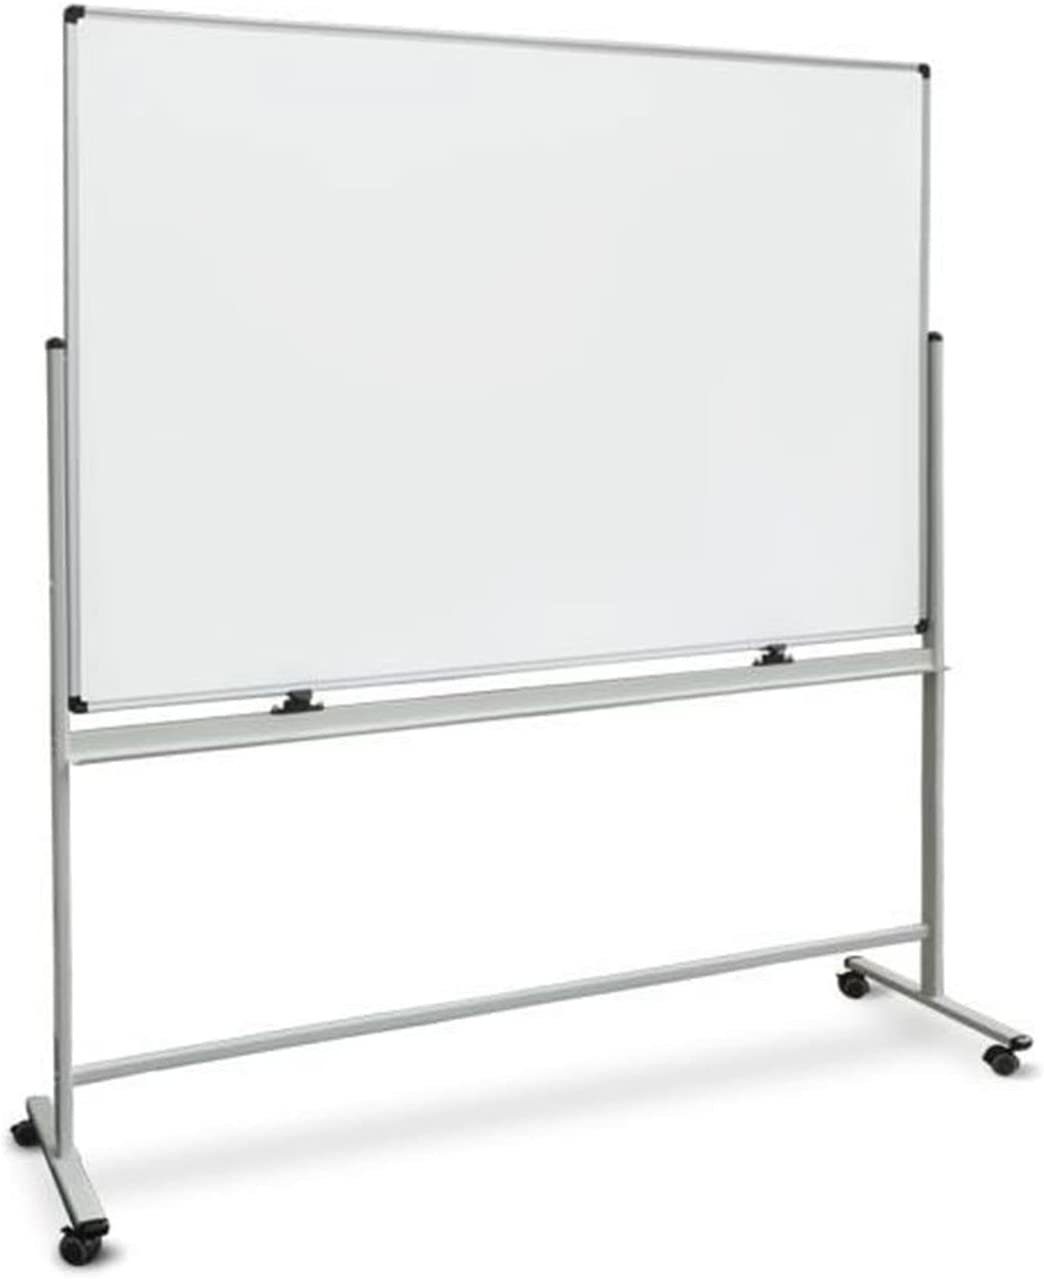 Wandtafel Mobil Whiteboard Karat & Schreibtafel, Stanford, verschiedene drehbar Größen,